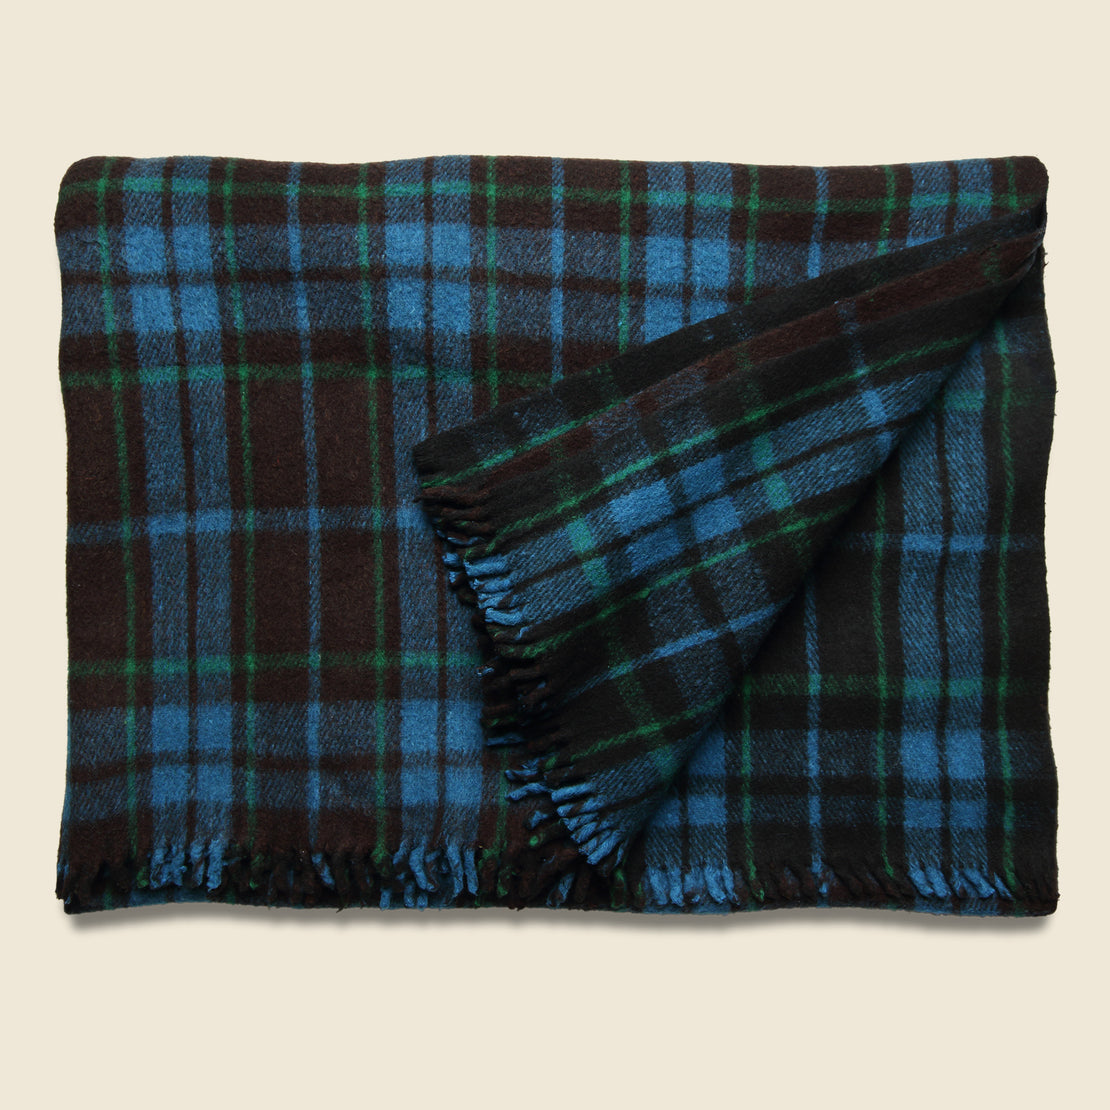 Vintage Vintage Indian Wool Plaid Blanket - Black/Green/Blue